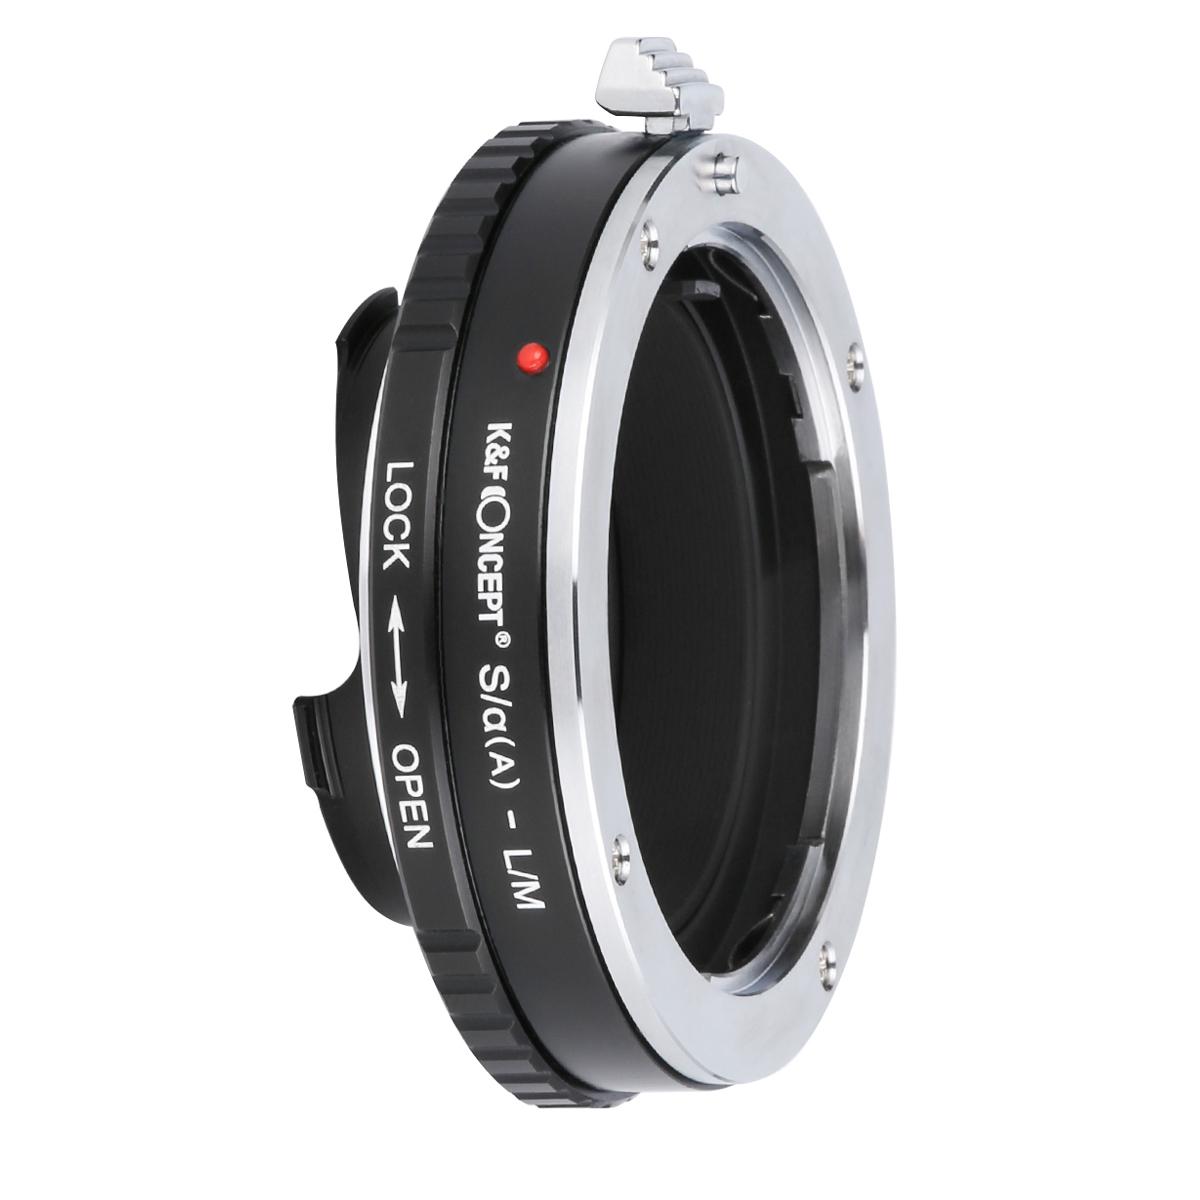 Adattatore per Obiettivi Sony A Mount a Fotocamere Leica M